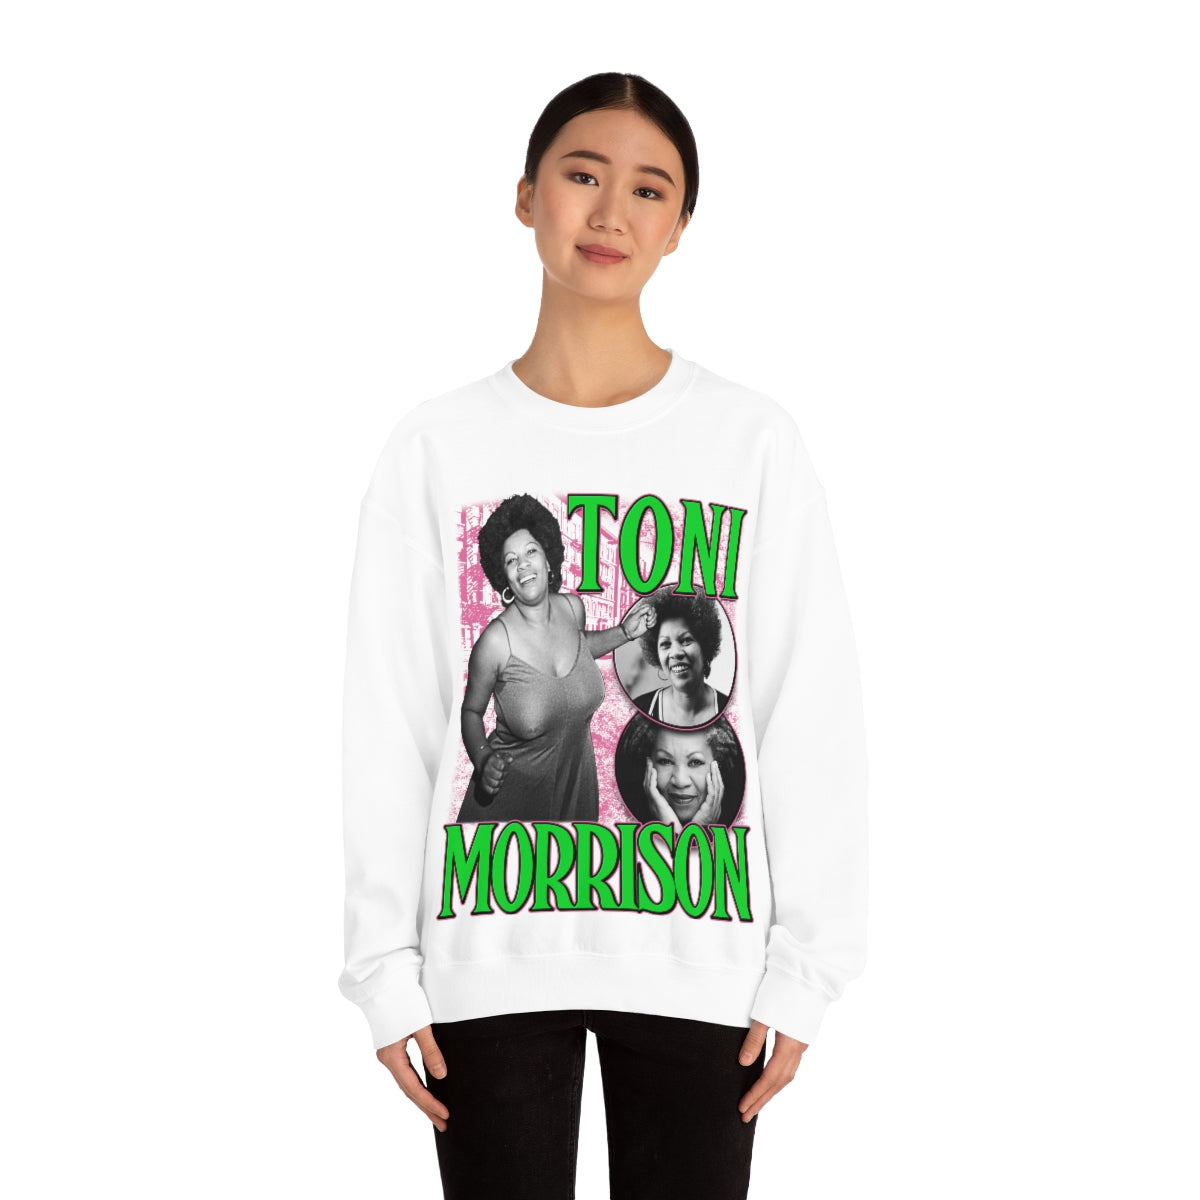 Toni Morrison Vibe Sweat Shirt